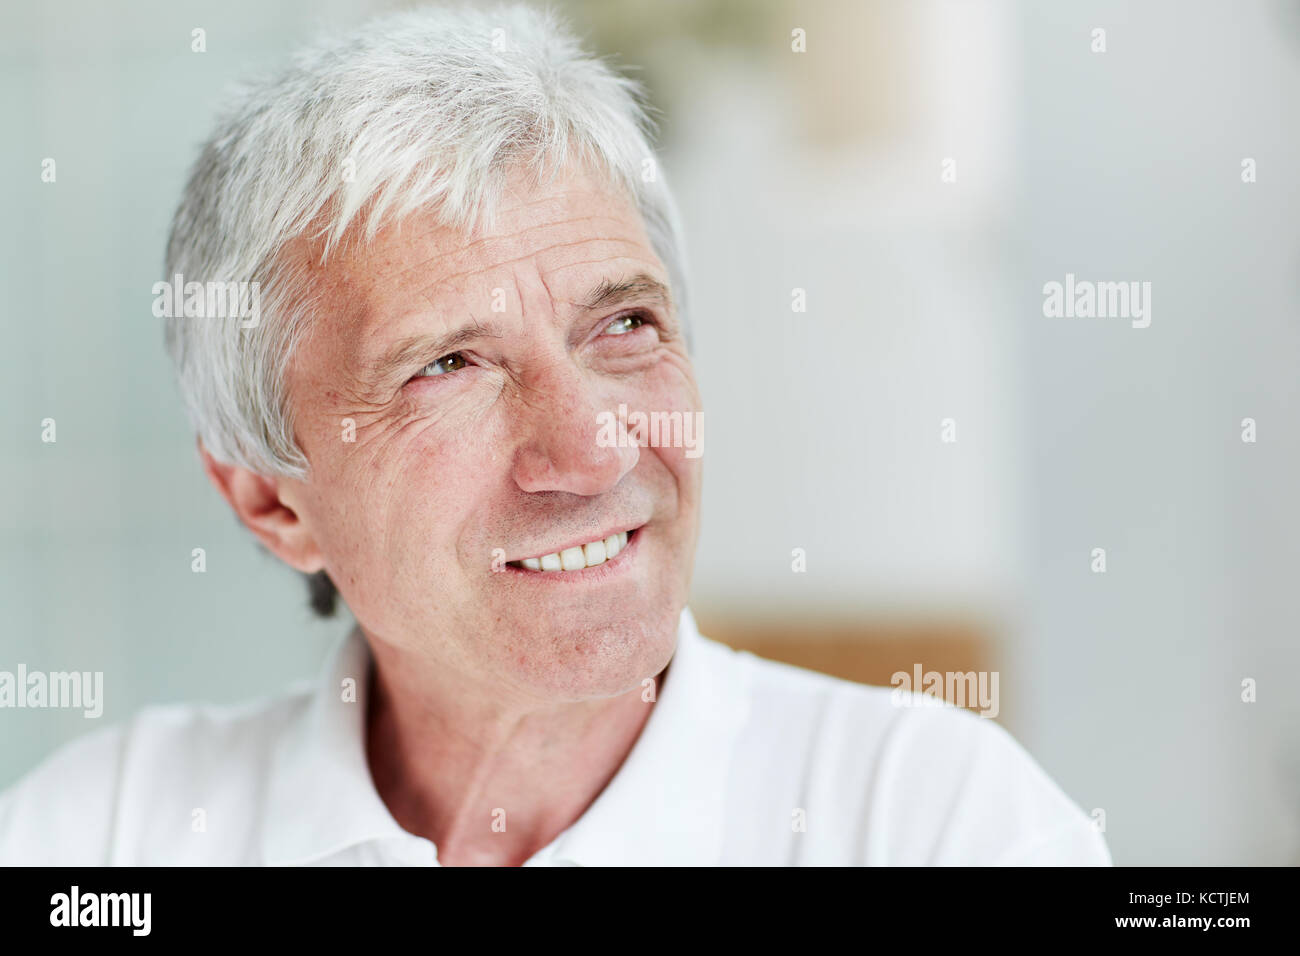 Senior Man with Warm Smile Stock Photo